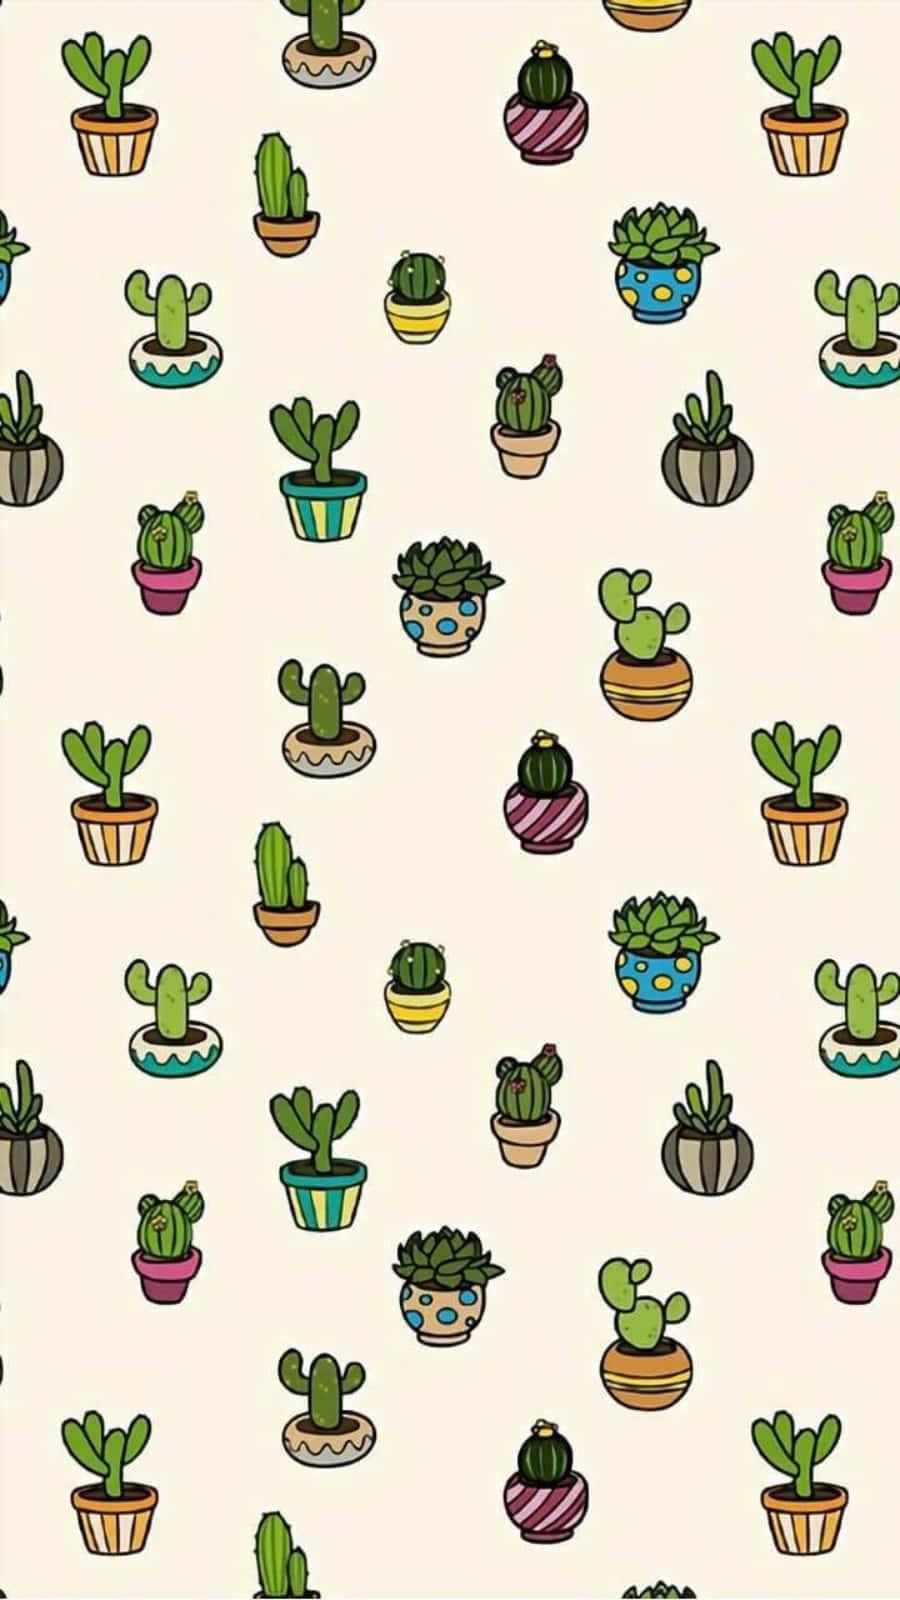 Unpatrón De Plantas De Cactus En Macetas Fondo de pantalla